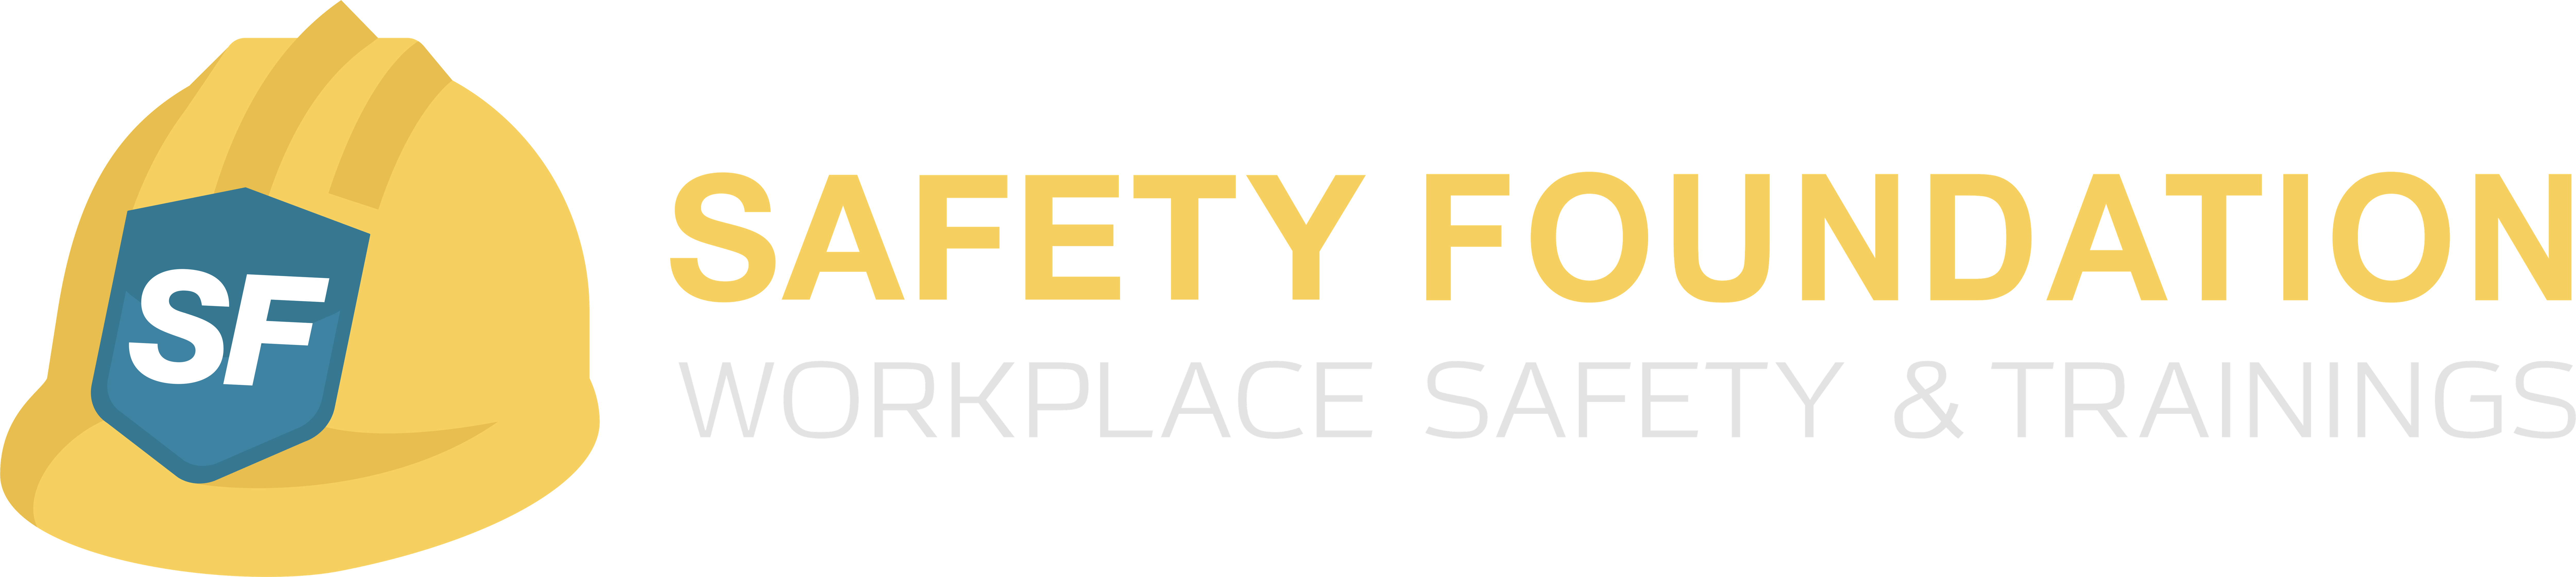 SF Safety Foundation Ltd